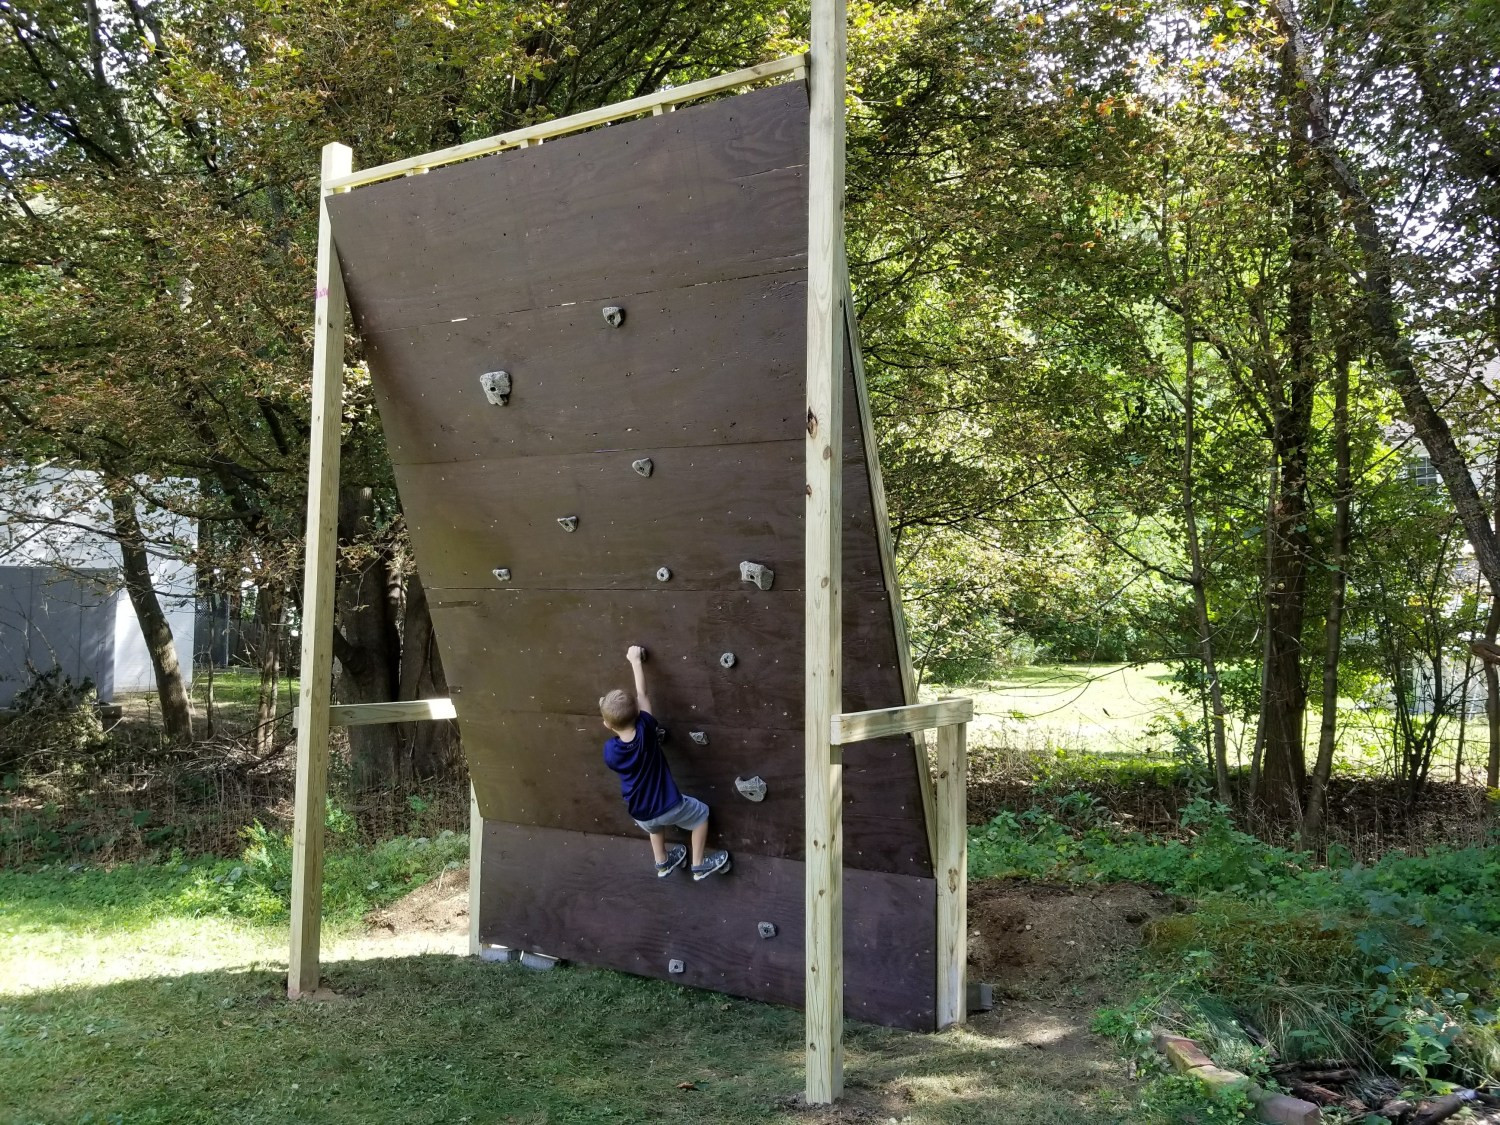 Outdoor Climbing Wall DIY
 Tutorial How I Built My Woody – DIY Outdoor Rock Climbing